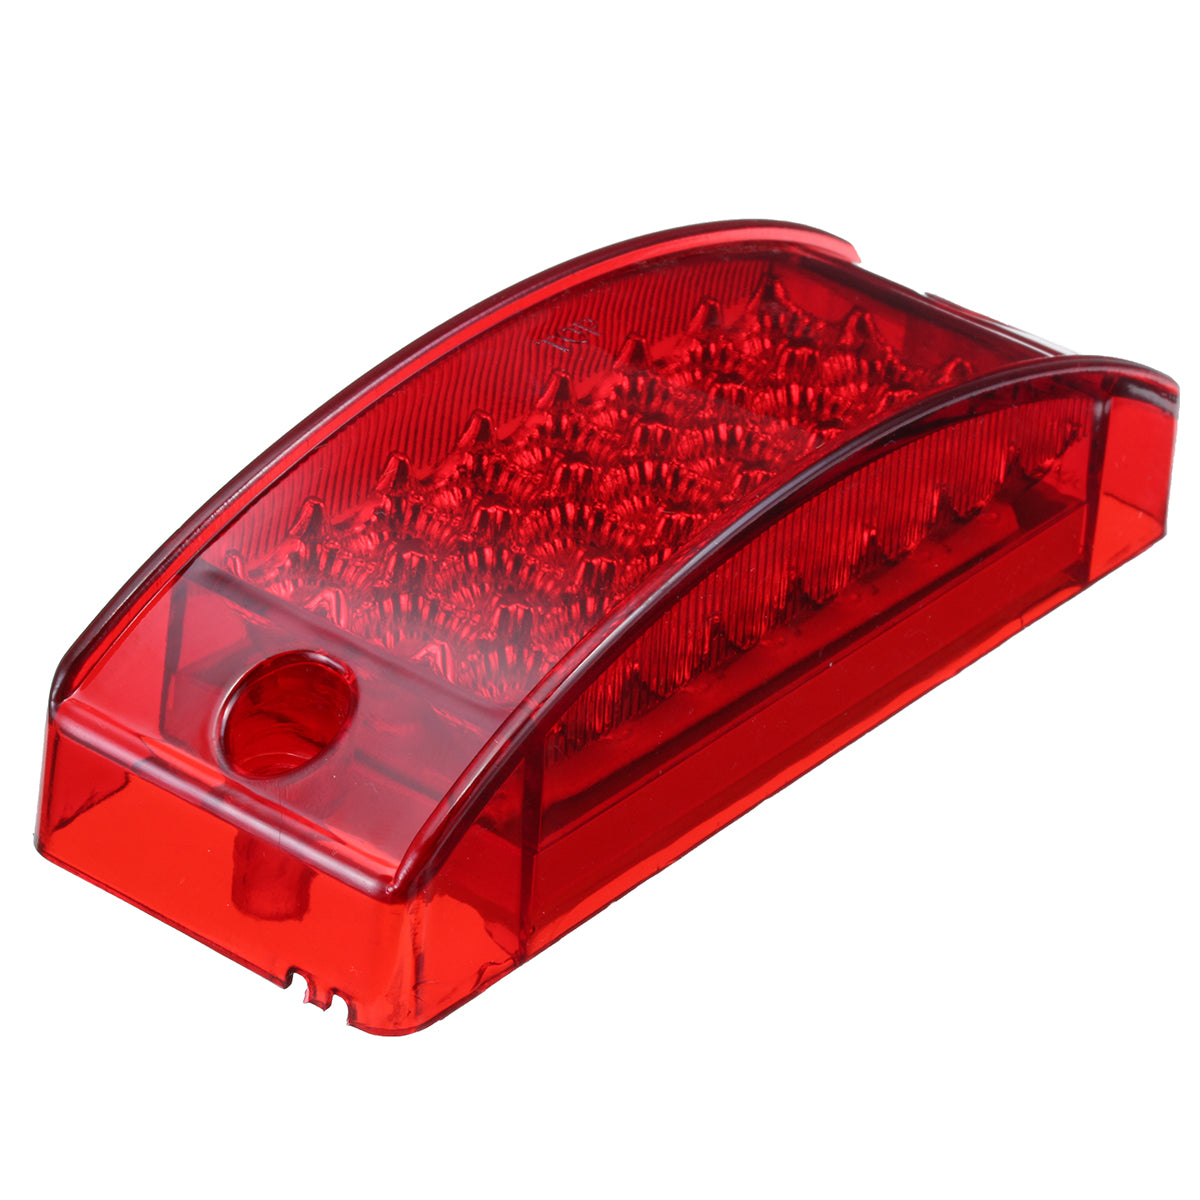 Firebrick 6Inch 12V 2W 0.2A 21LED Car Rectangle Side Marker Lights Indicator Lamp for Truck Trailer